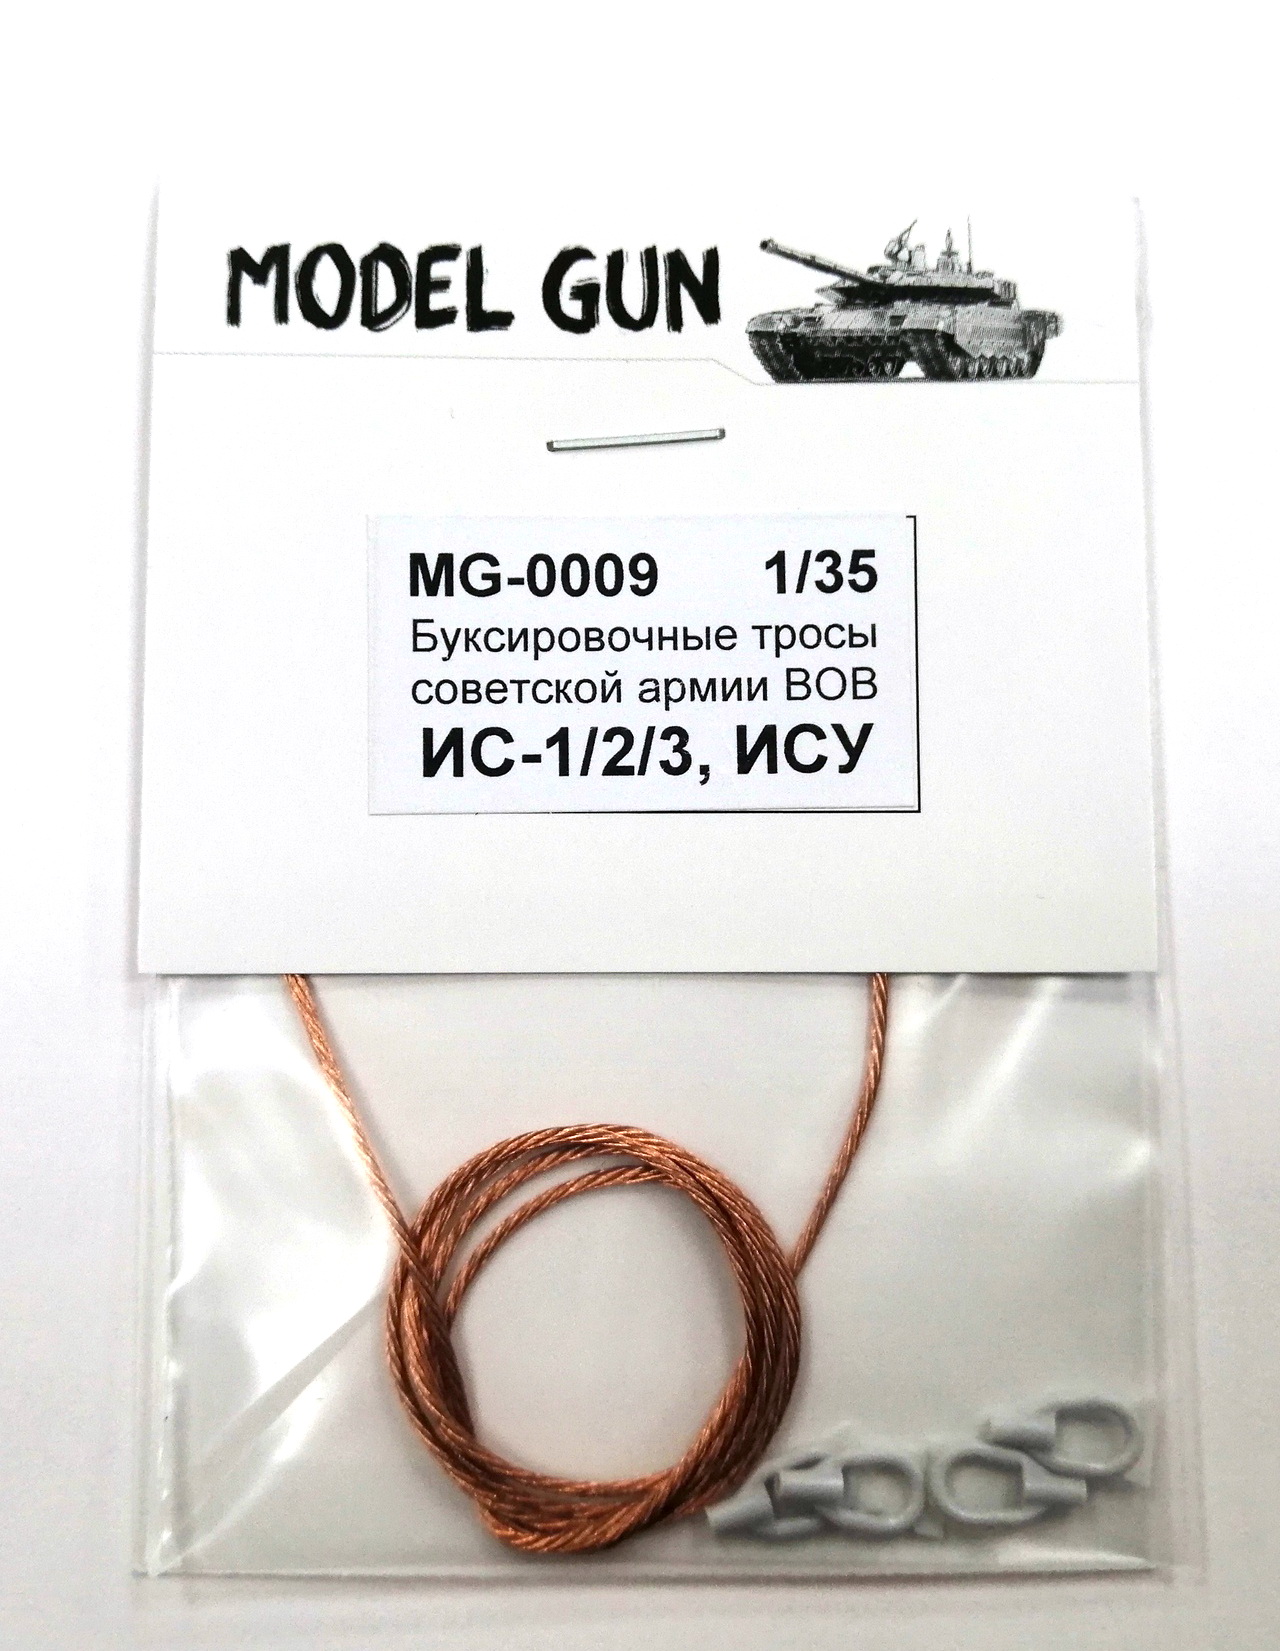 MG-0009  дополнения из металла  Буксировочные тросы ИС-1/2/3, ИСУ-152  (1:35)